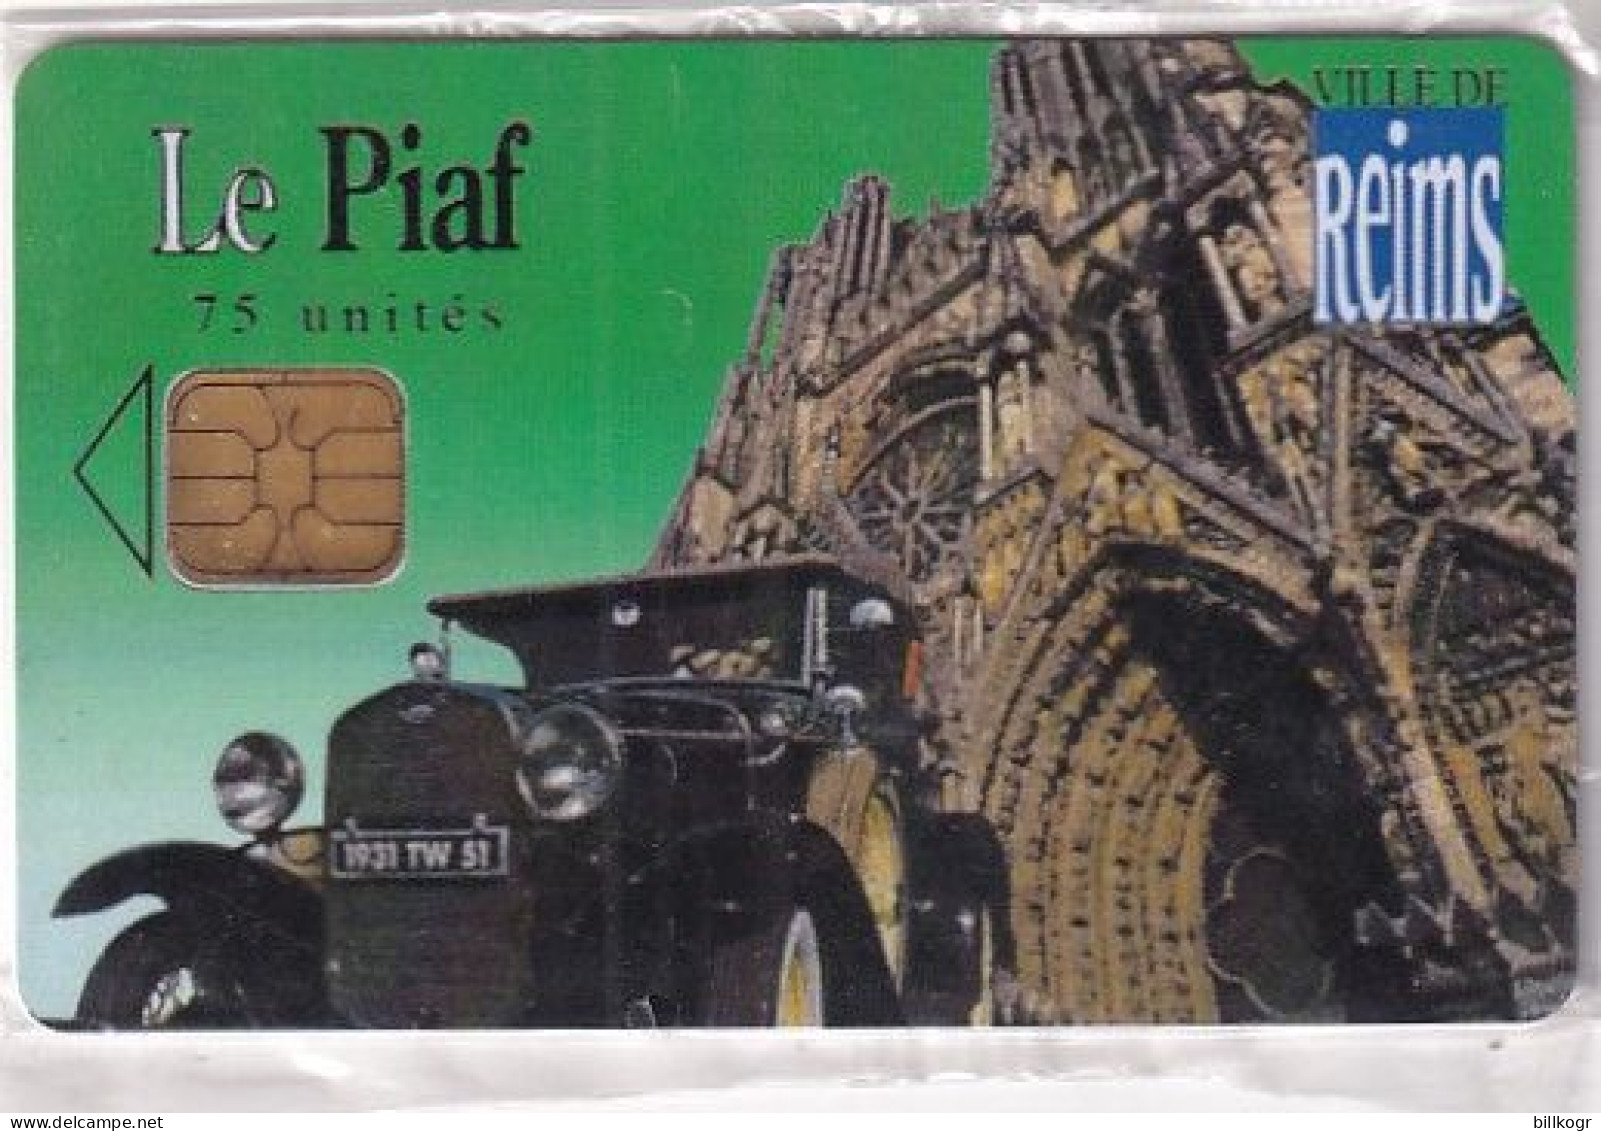 FRANCE - Le Piaf/Ville De Reims 75 Unites, Tirage 2800, 07/06, Mint - PIAF Parking Cards